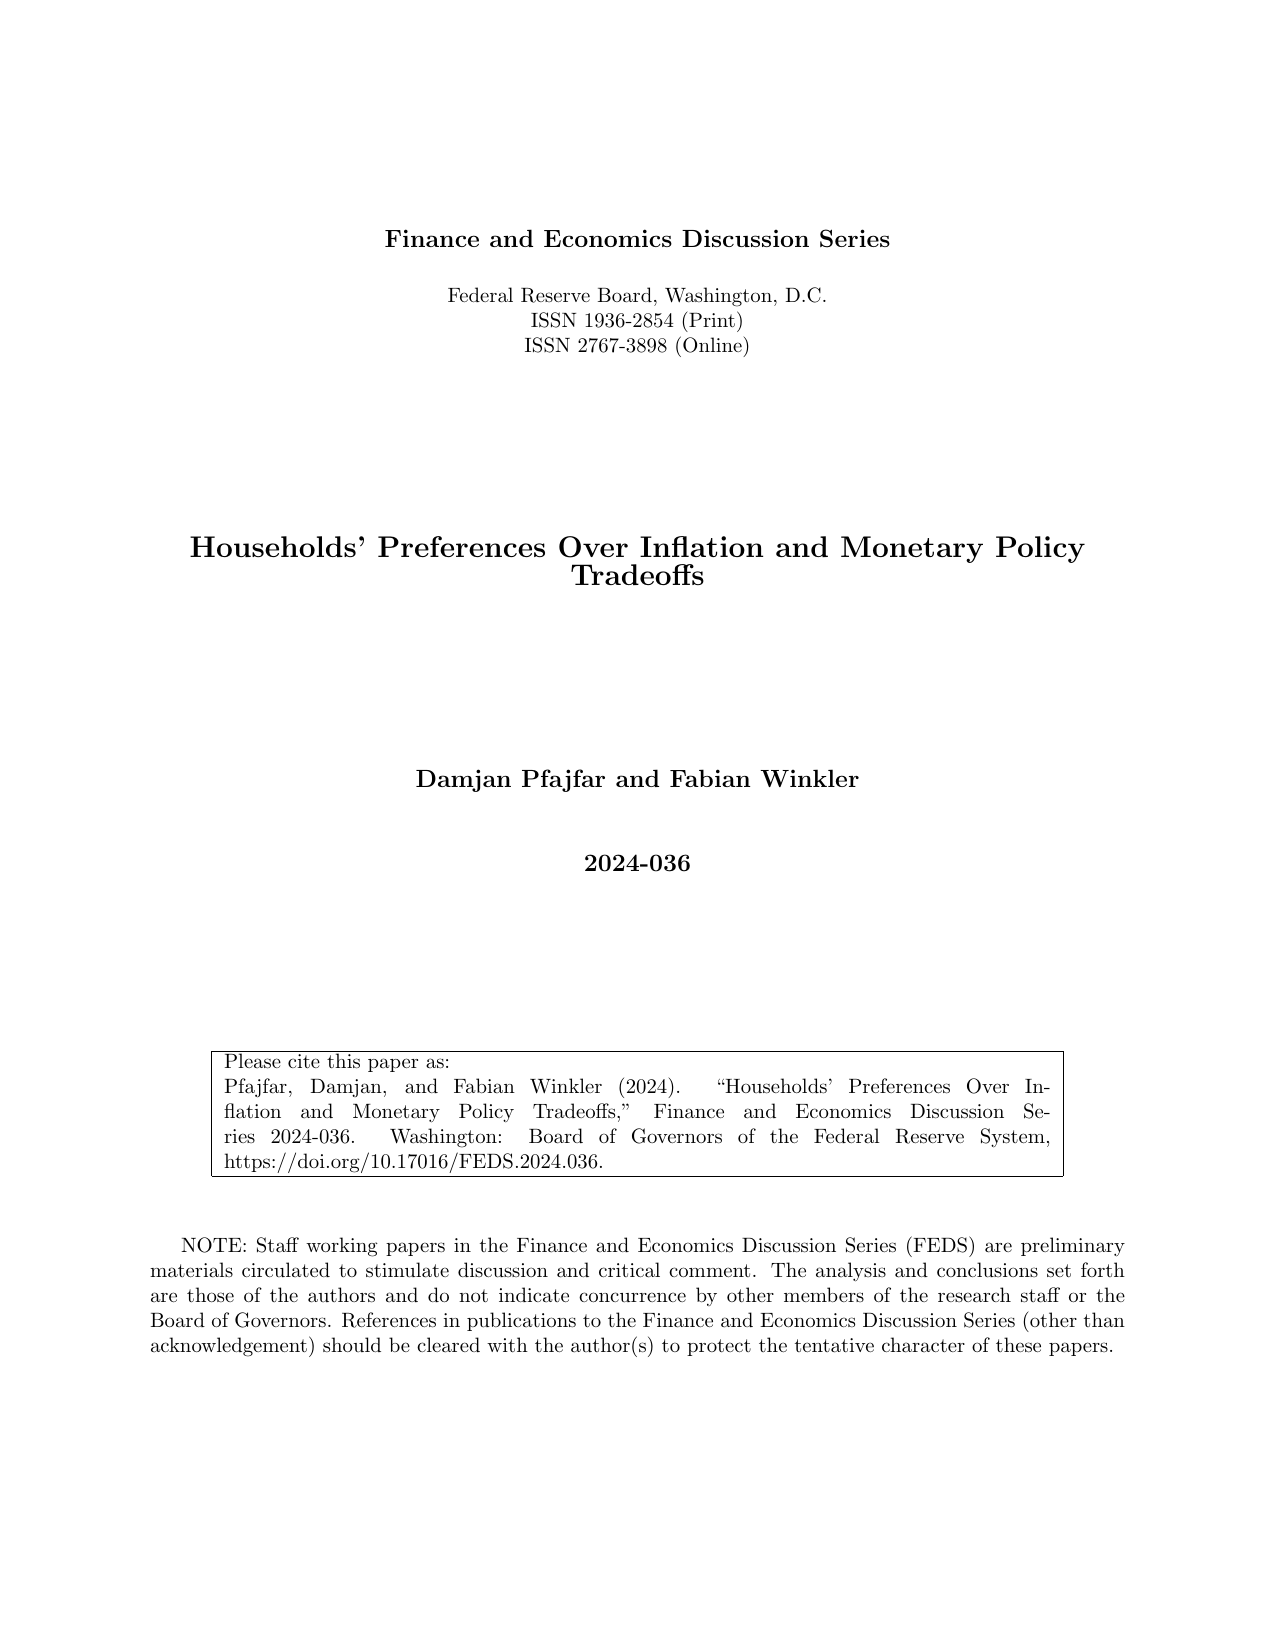 美联储-家庭对通货膨胀的偏好与货币政策权衡（英）.pdf